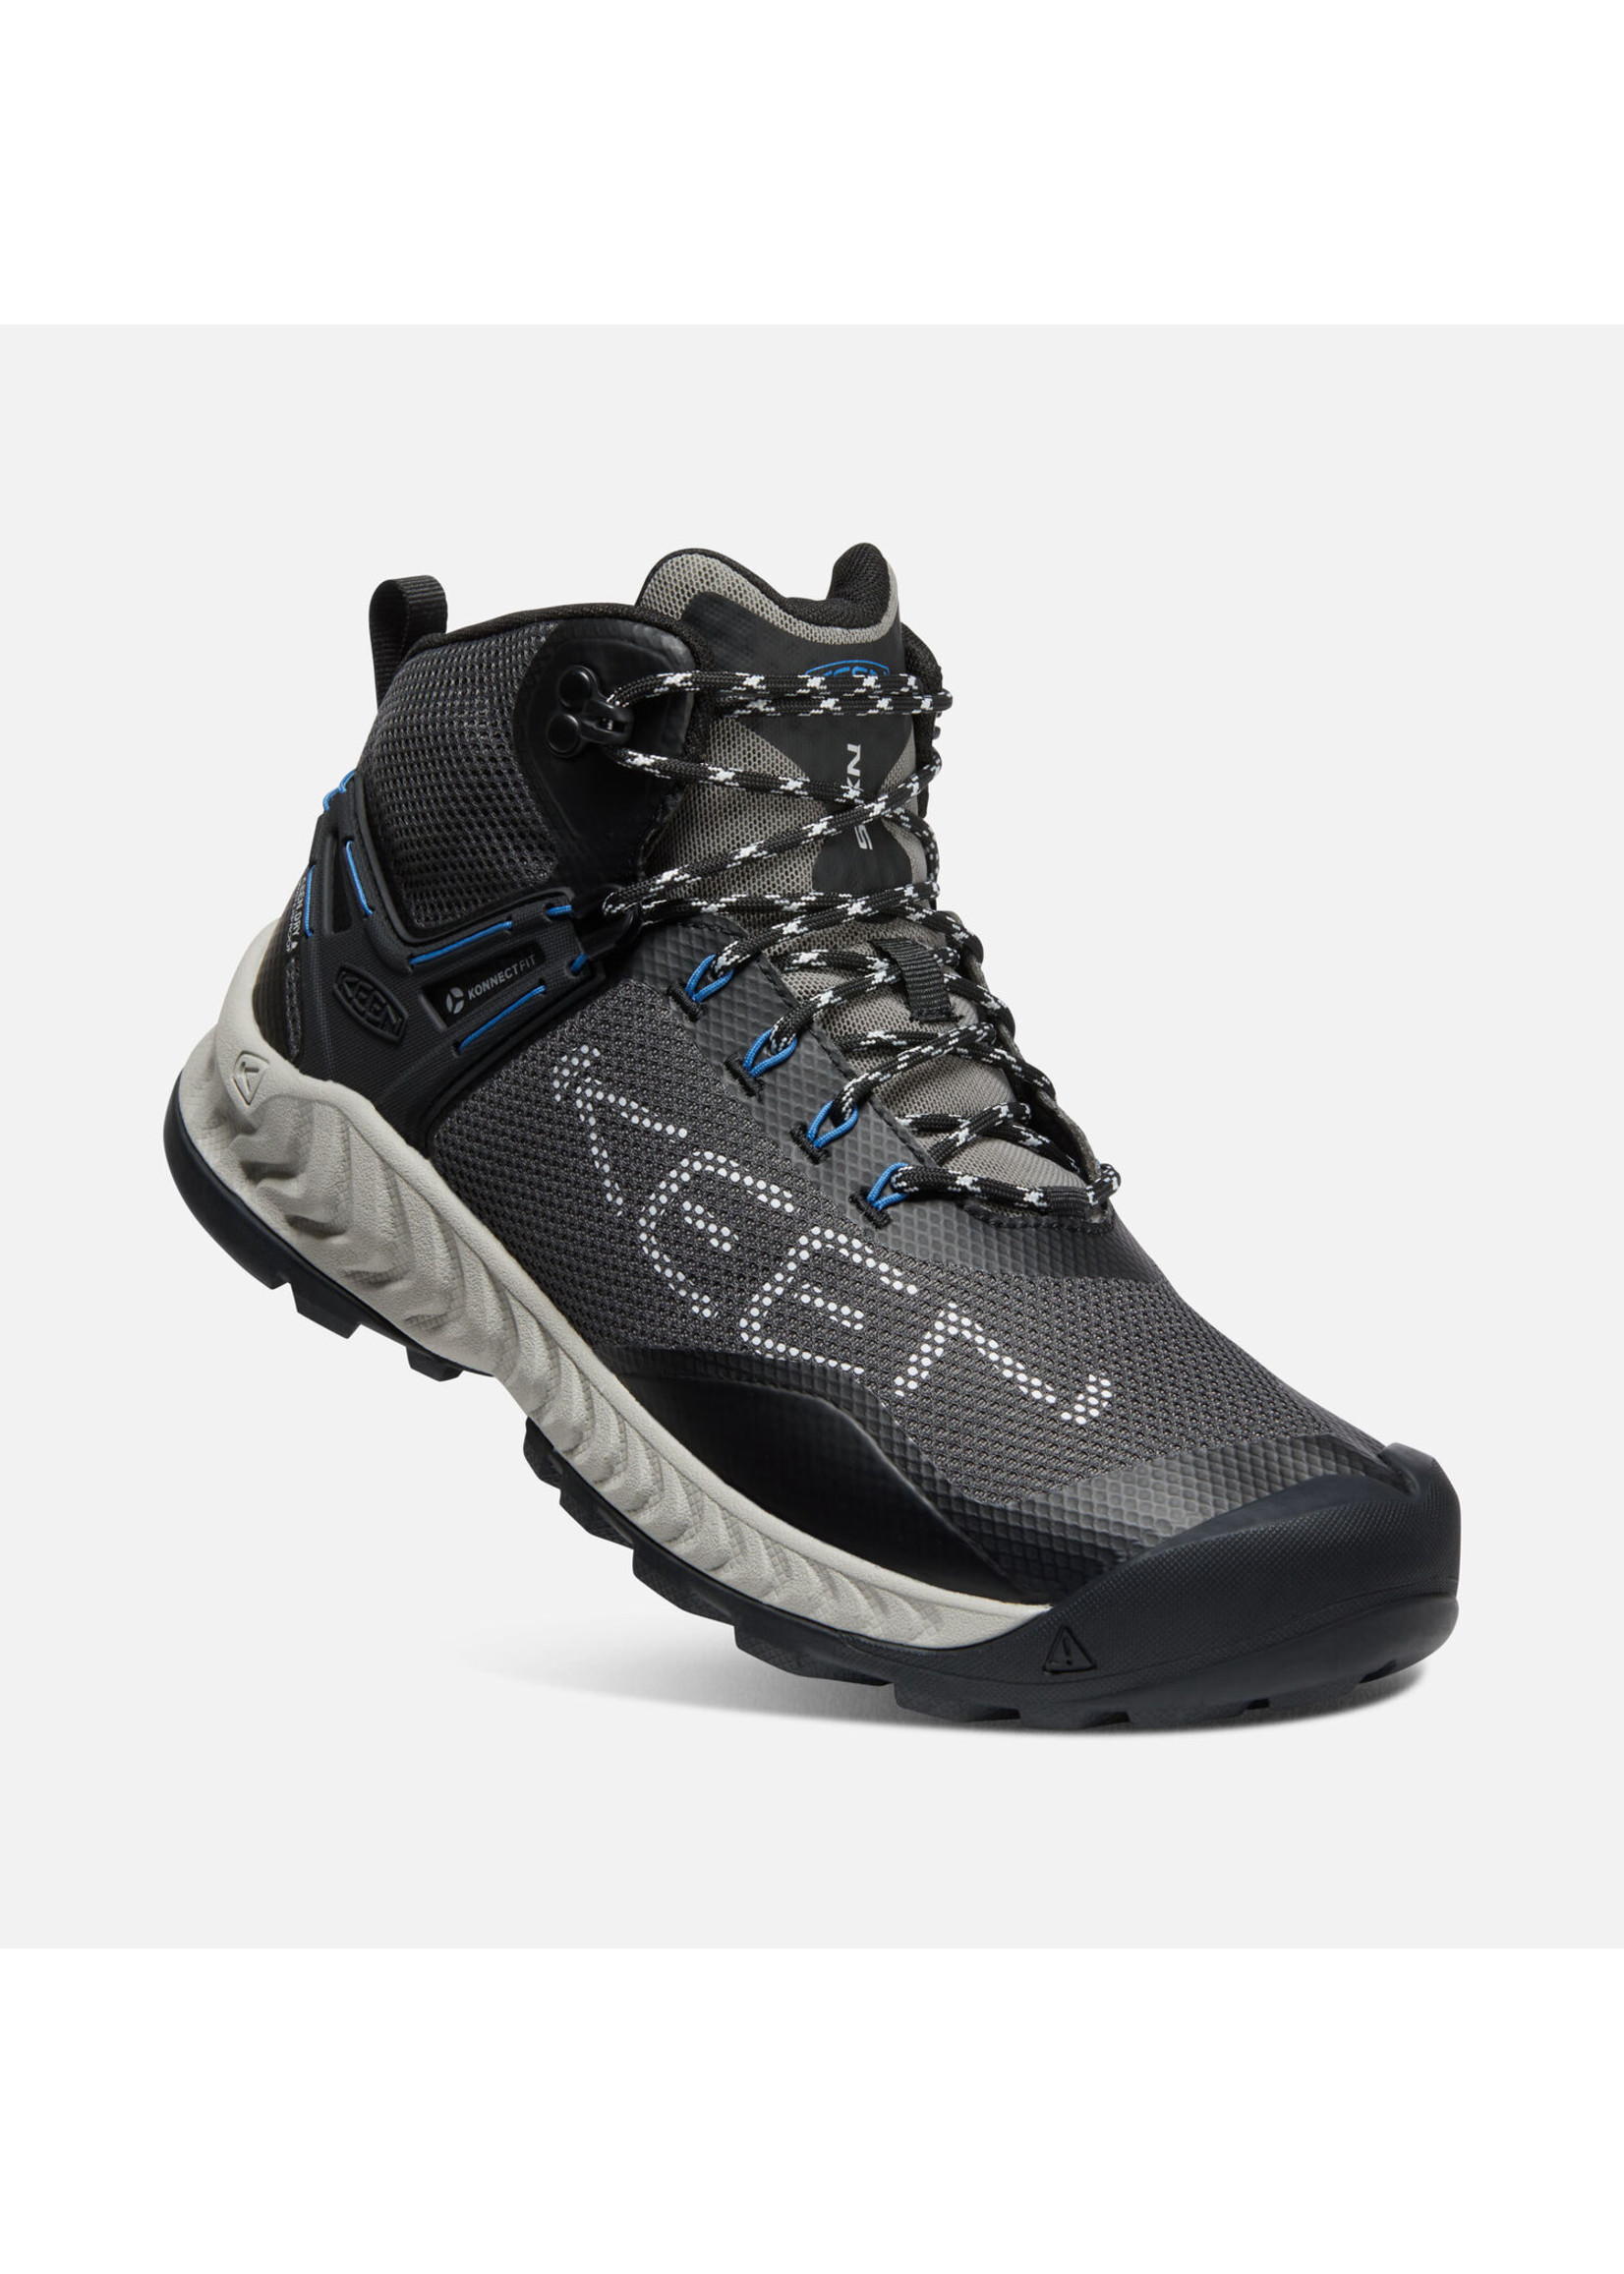 Keen Footwear Mens Nxis Evo Waterproof Magnet/Vapor